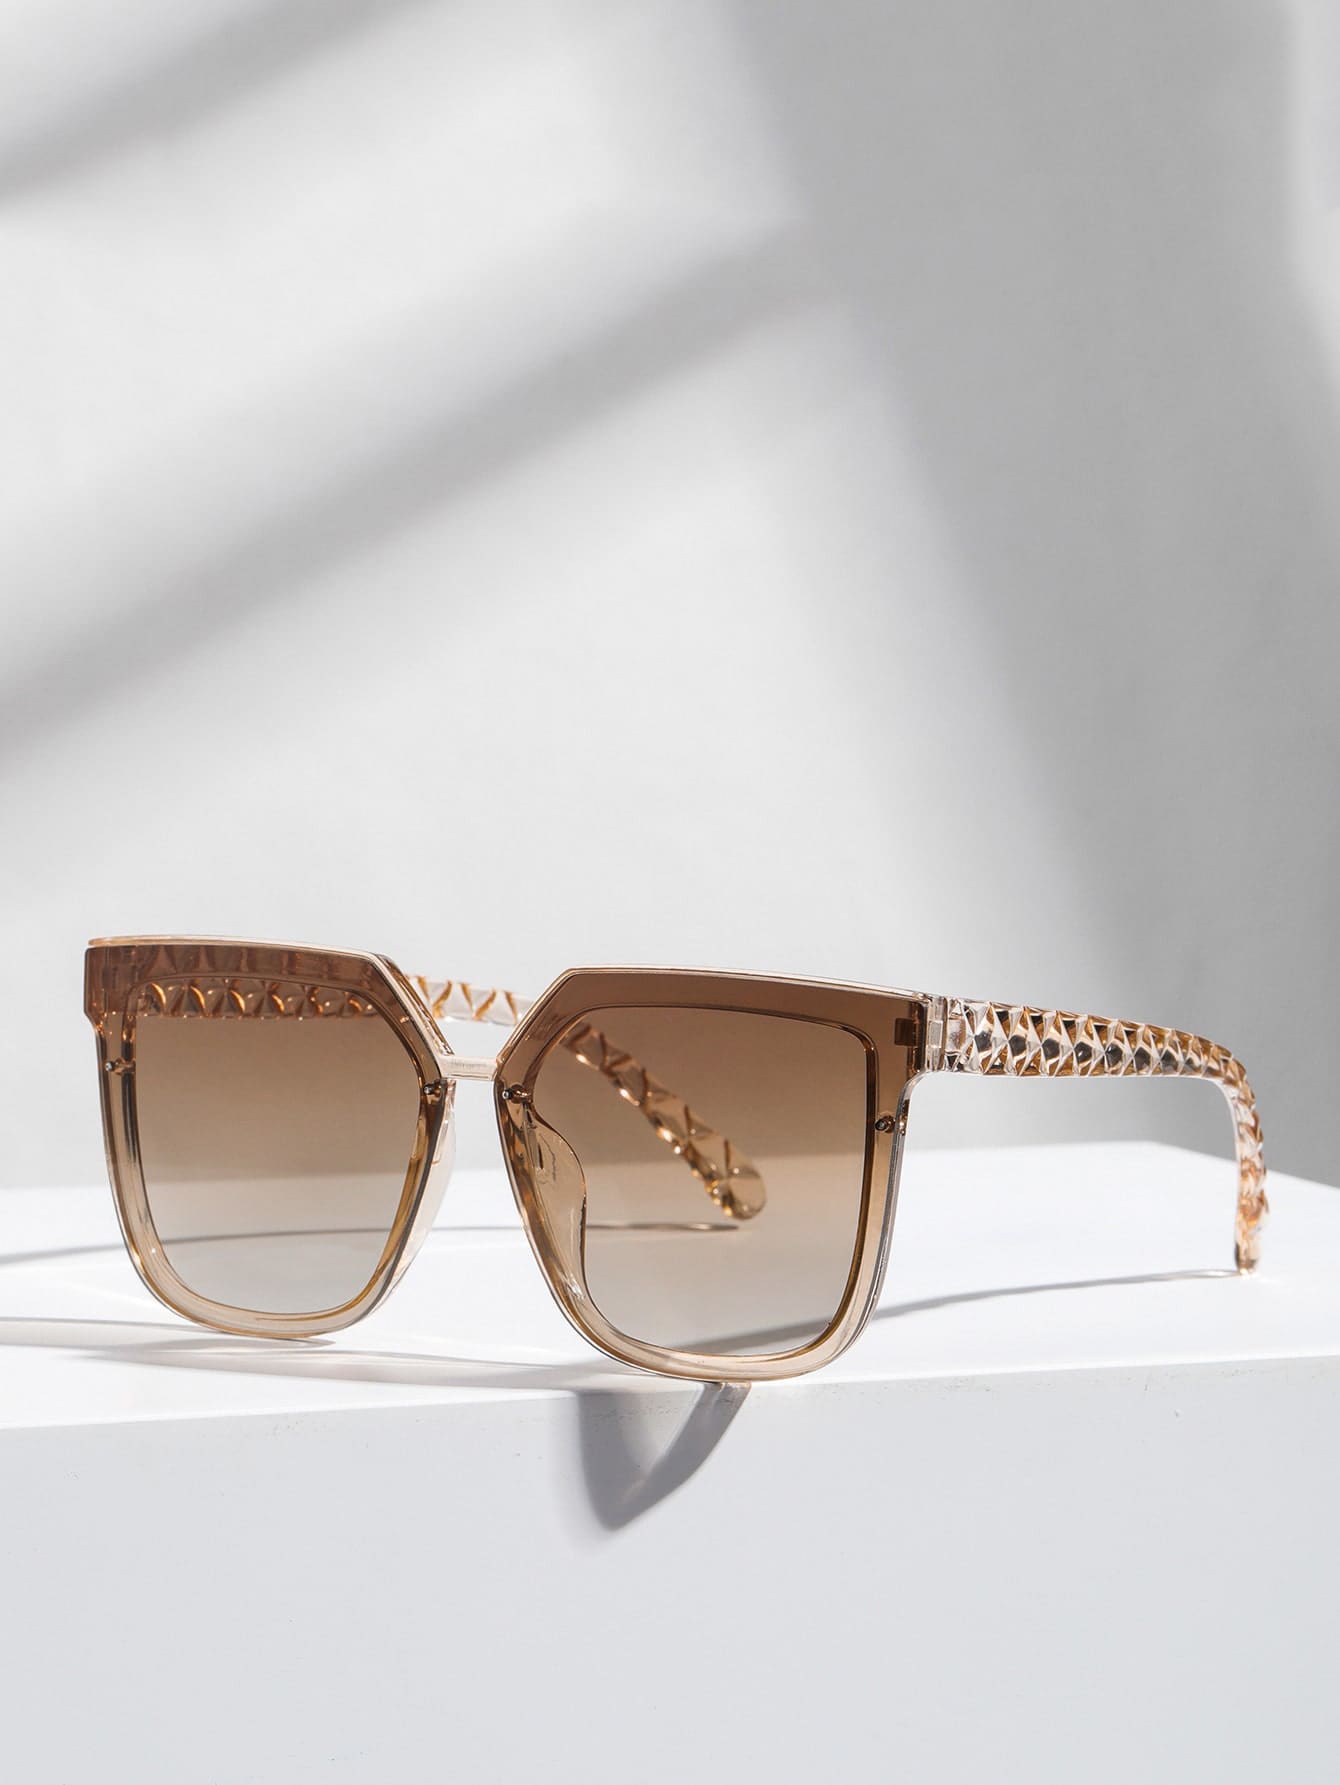 1 шт. женские квадратные пластиковые индивидуальные солнцезащитные очки в стиле бохо для вождения